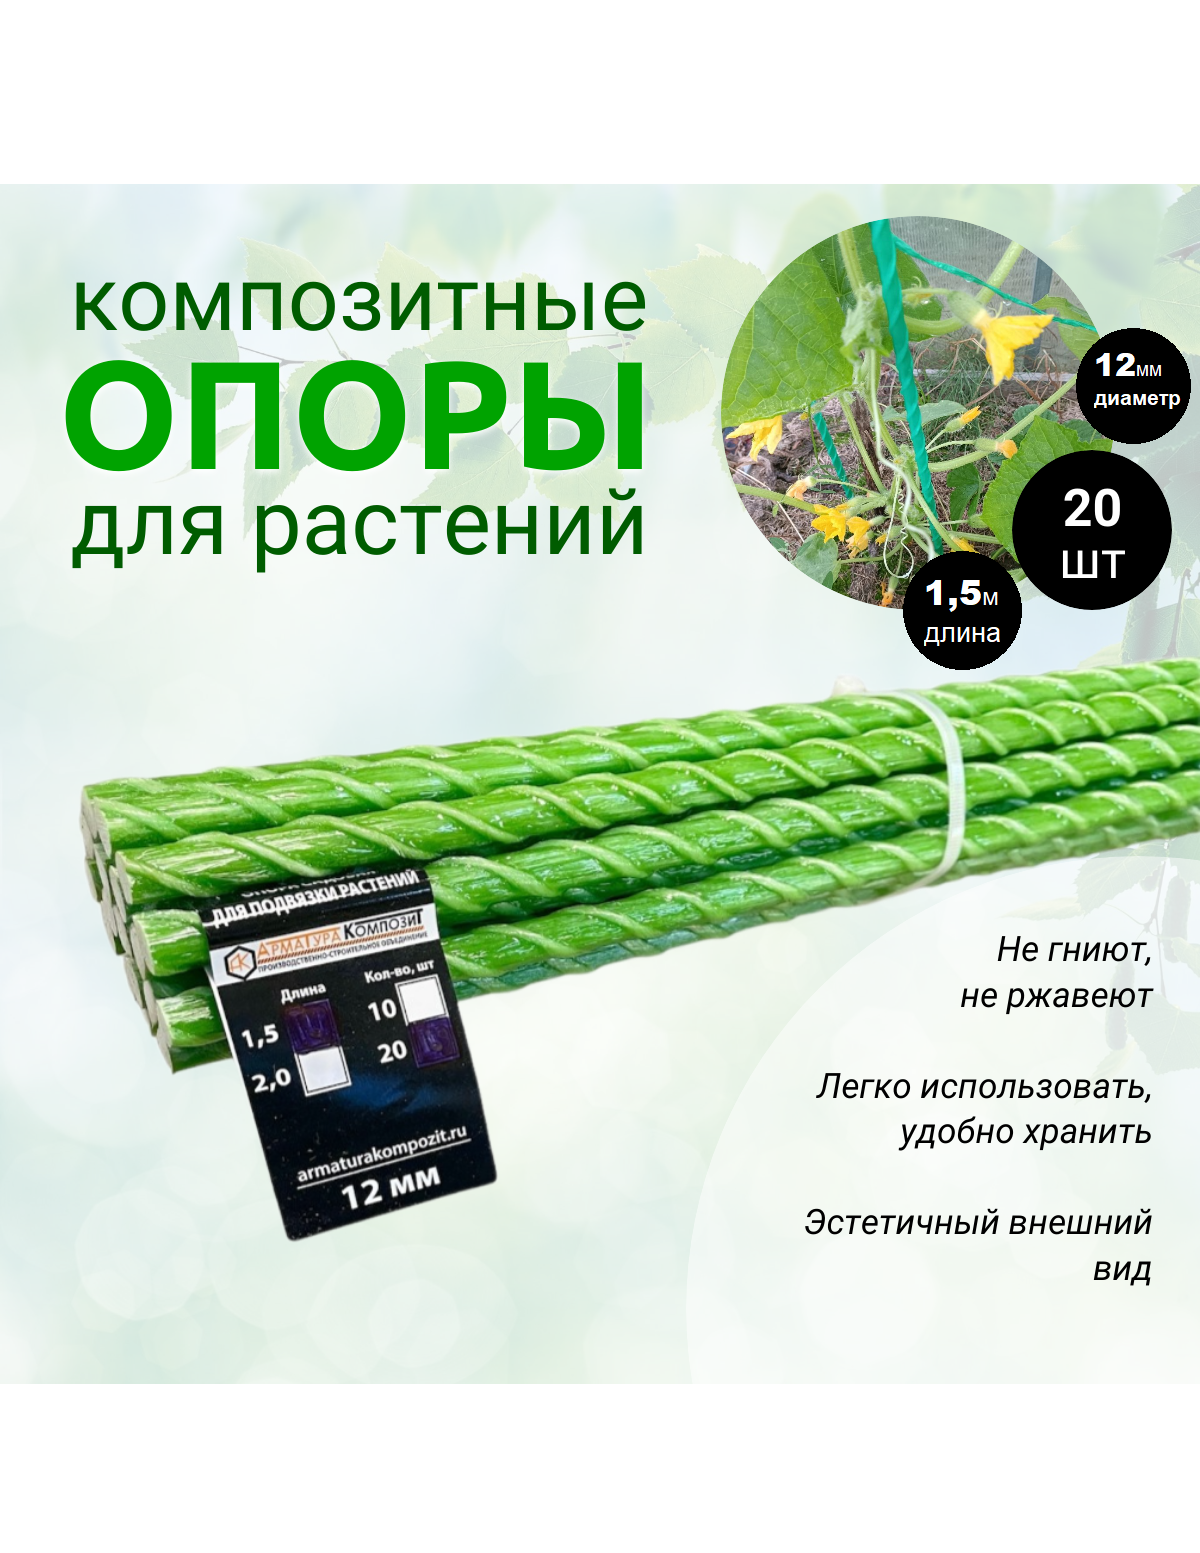 Опоры Садовые 12 мм, 20 штук по 1,5 м для подвязки растений композитные (колышки)